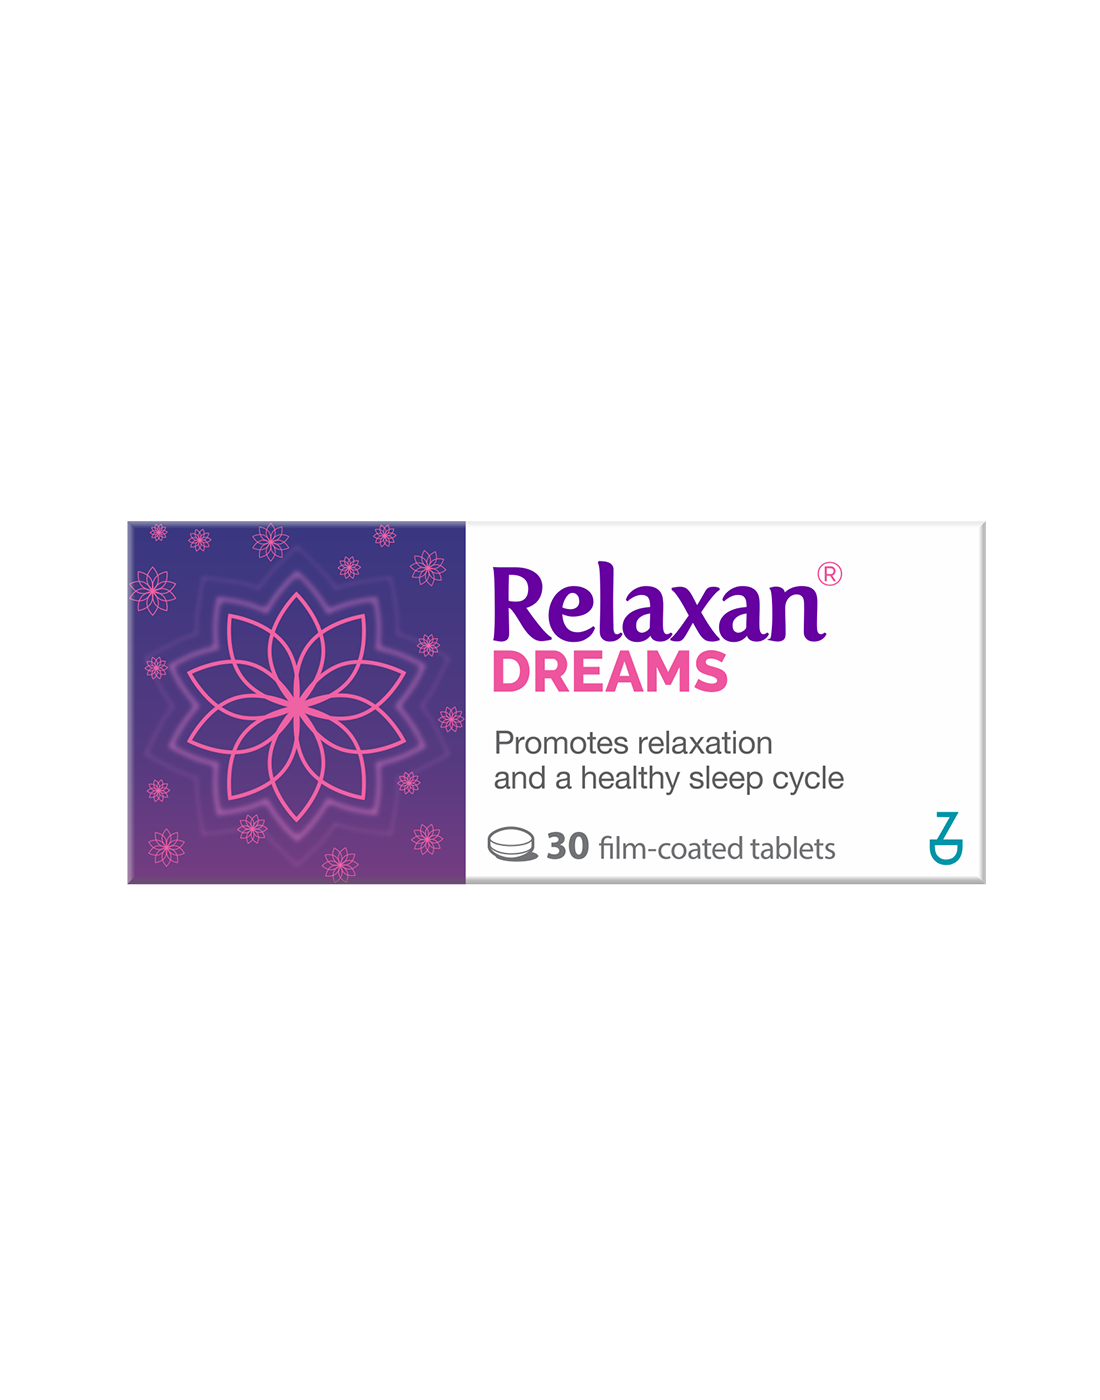 Relaxan dreams